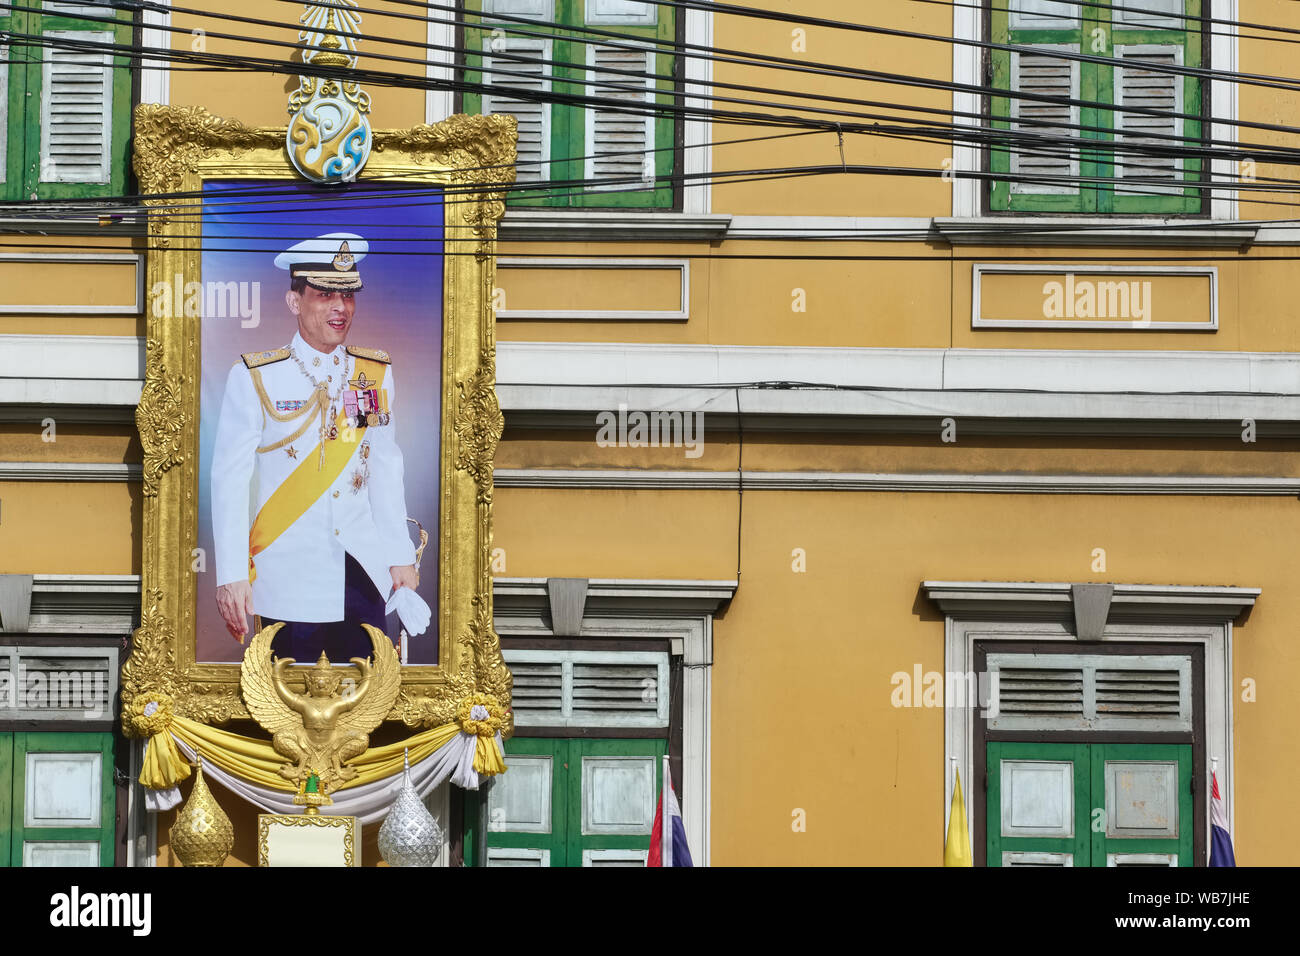 Un grand portrait du roi thaïlandais Maha Vajiralongkorn, raccroché à l'extérieur (Gularb Suankularb Suan) École en zone Pahurat, Bangkok, Thaïlande Banque D'Images